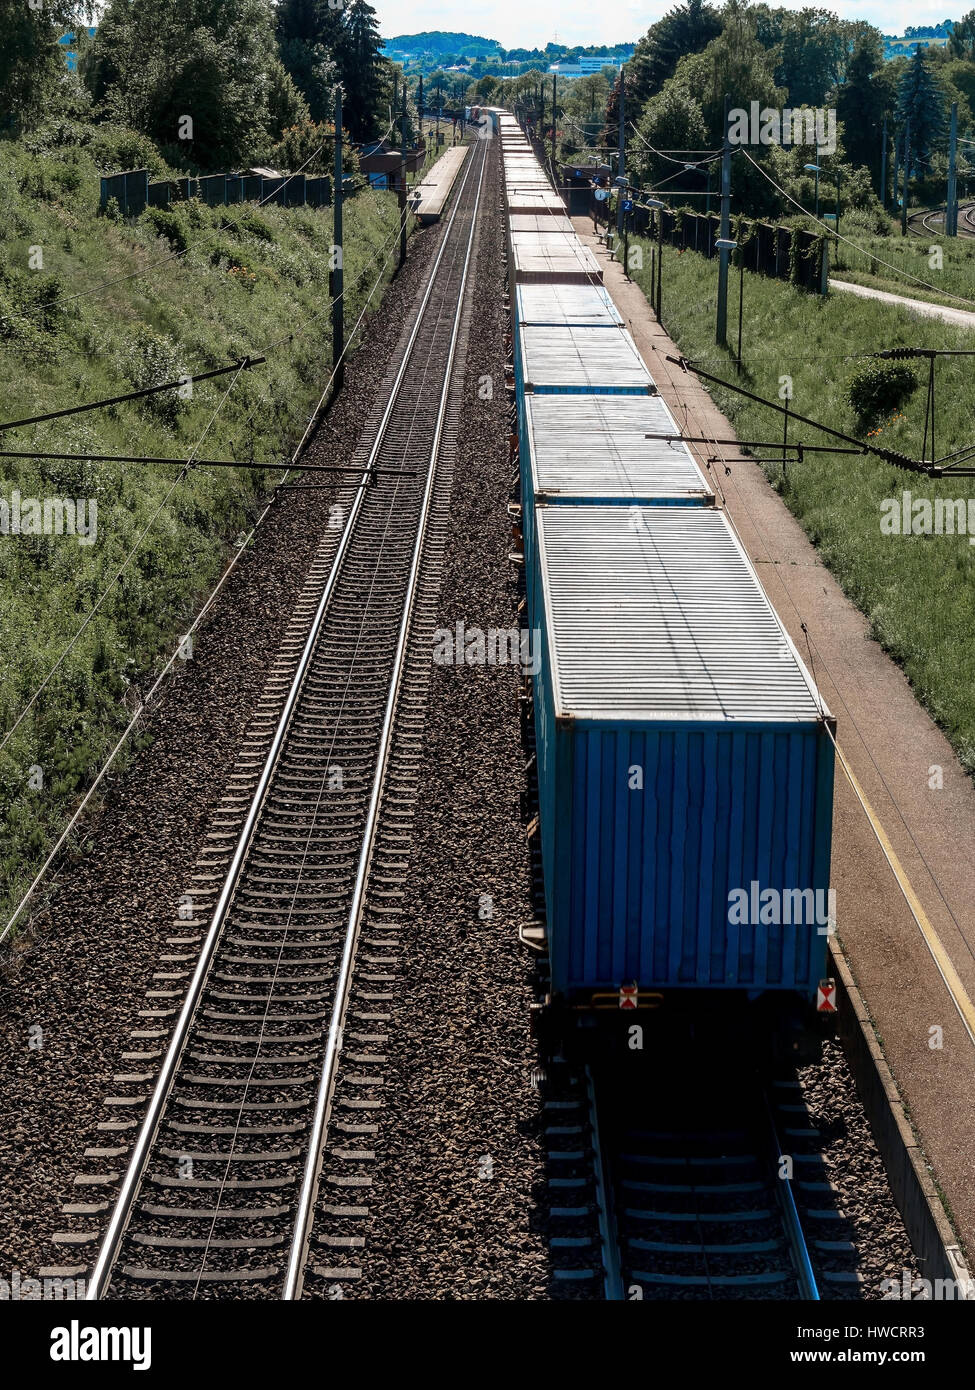 Un train de marchandises sur une section, Ein Zug mit Gütern auf einer Bahnstrecke Banque D'Images